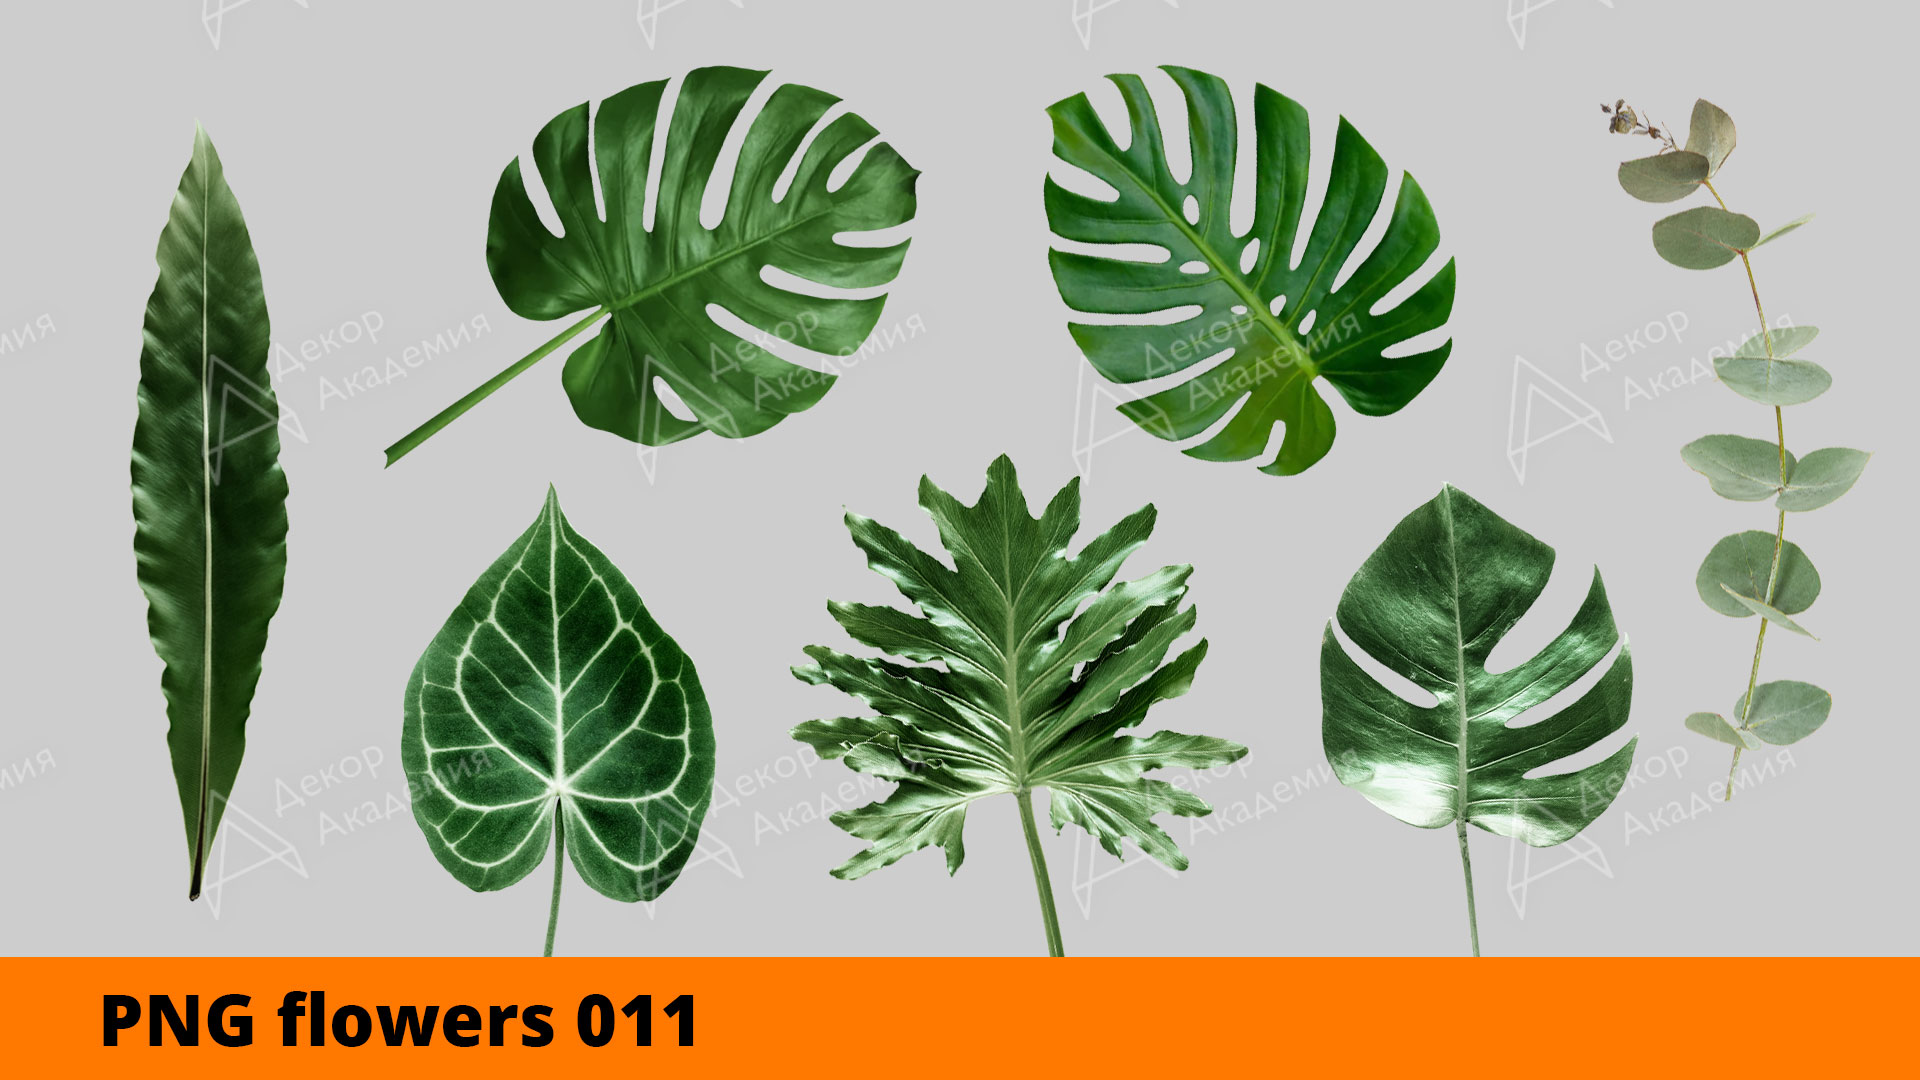 Декоративная зелень и листья без фона для работы в фотошопе (для эскизов и визуализации)